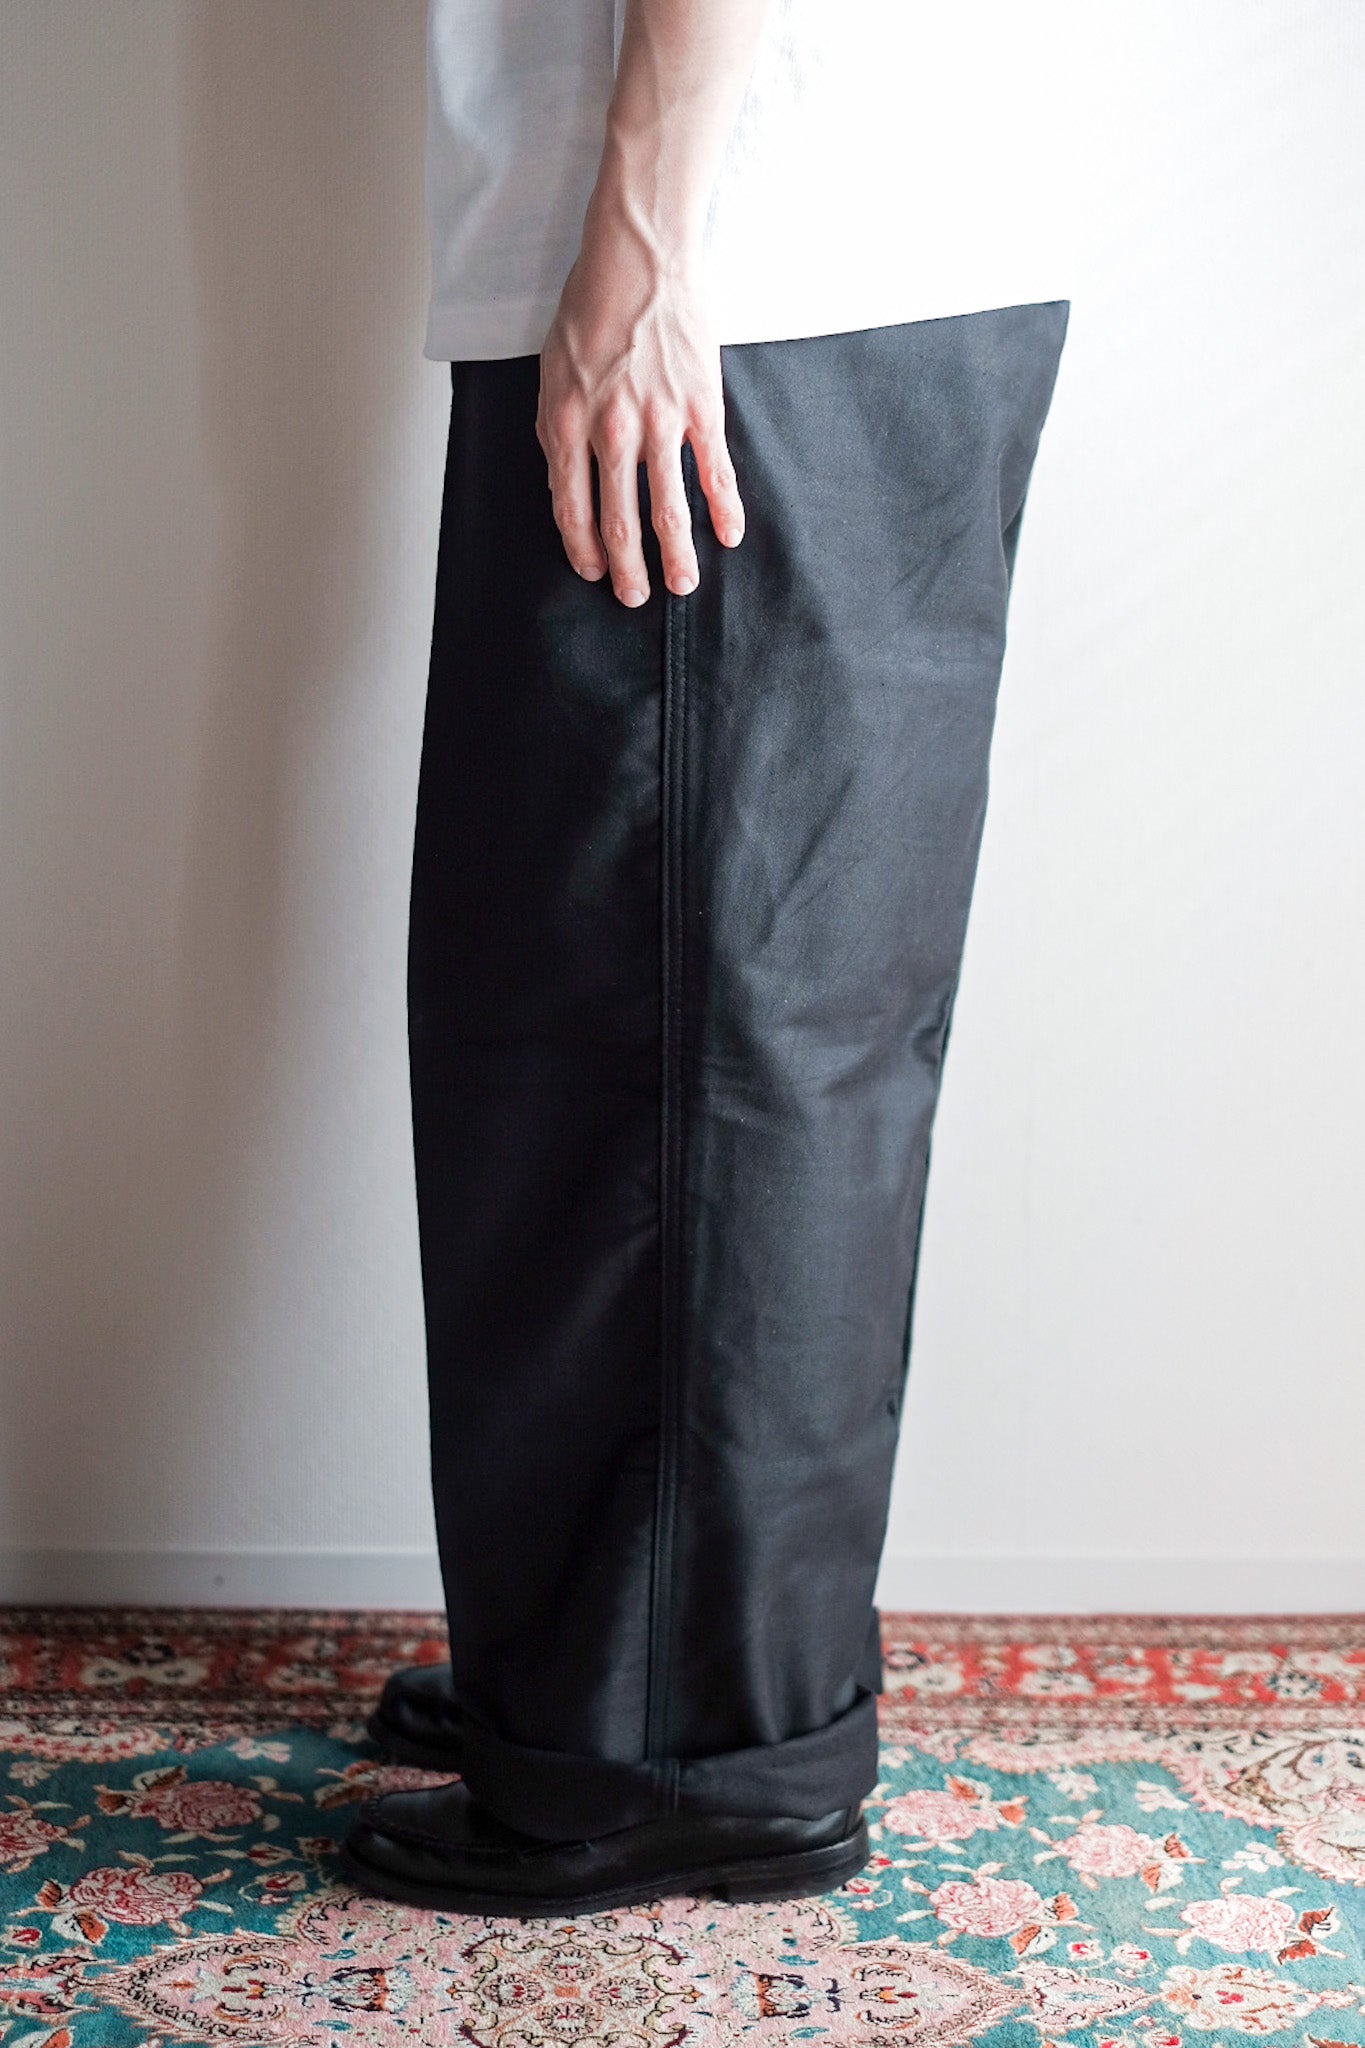 [~ 40's] Pantalon de travail de moleskin noirs vintage français "Adolphe Lafont" "Stock mort"